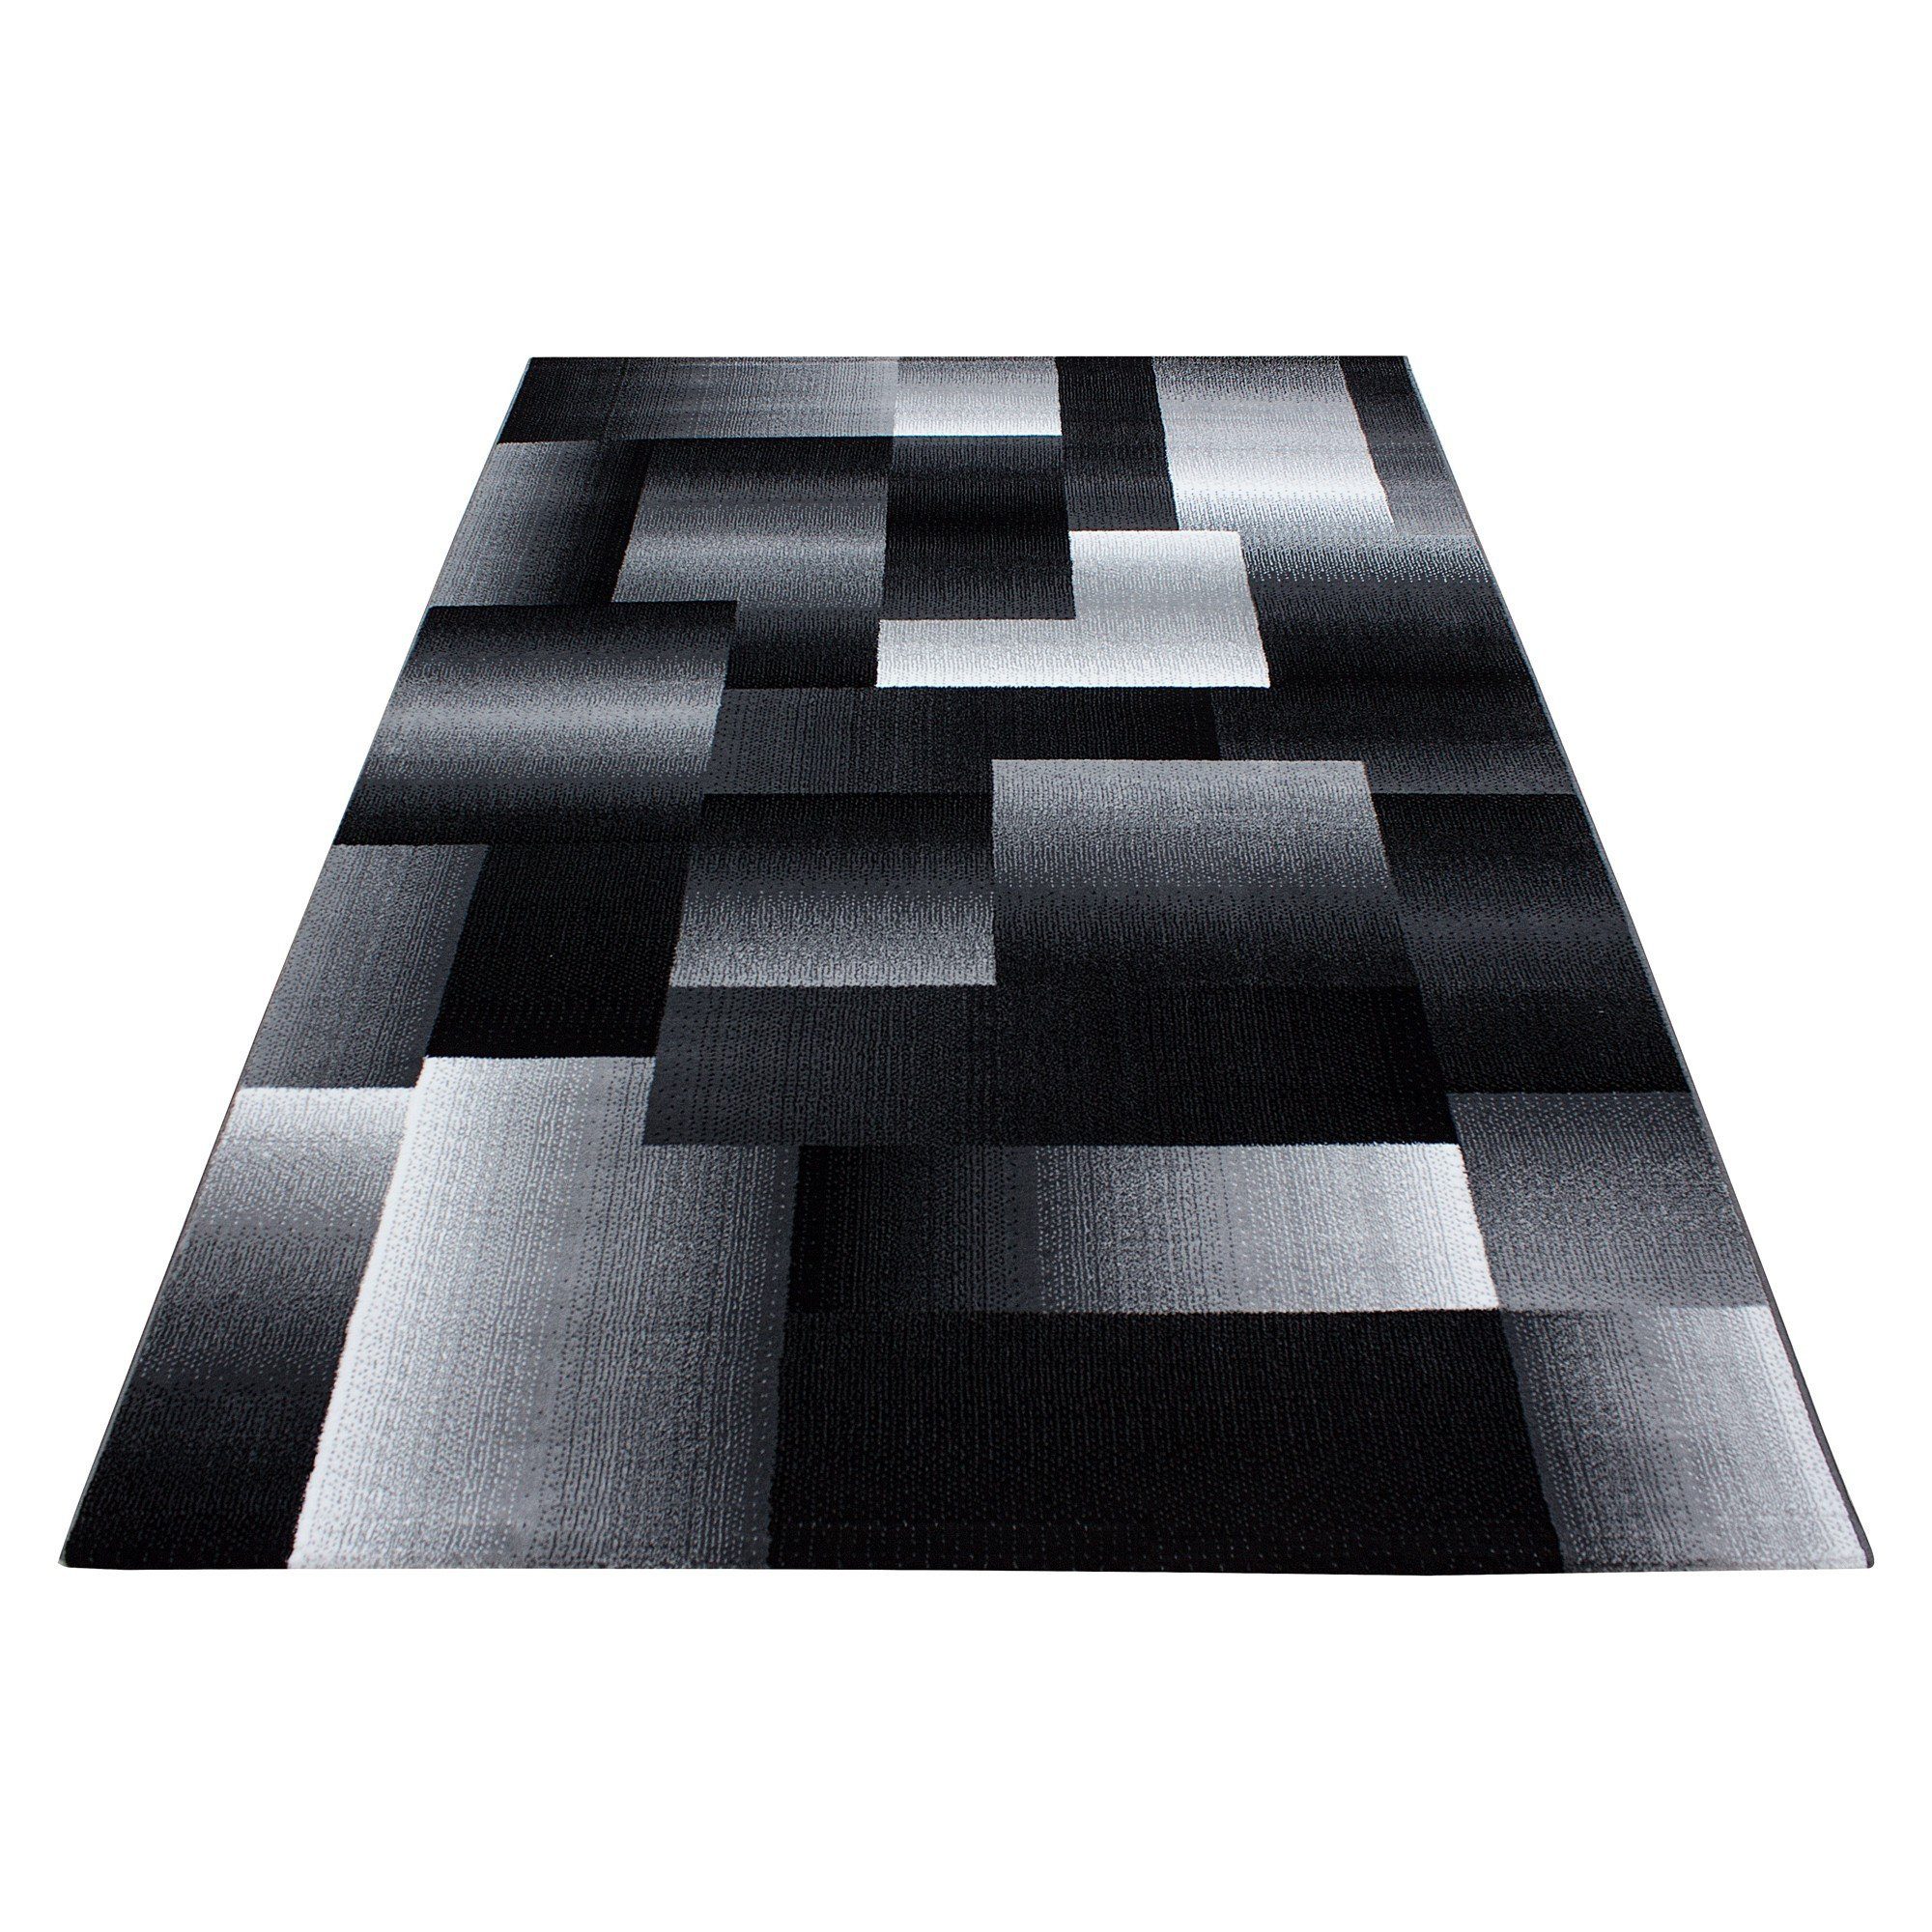 Designteppich Flachflorteppich gemustert modern Designerteppich Miovani Kurzflor,